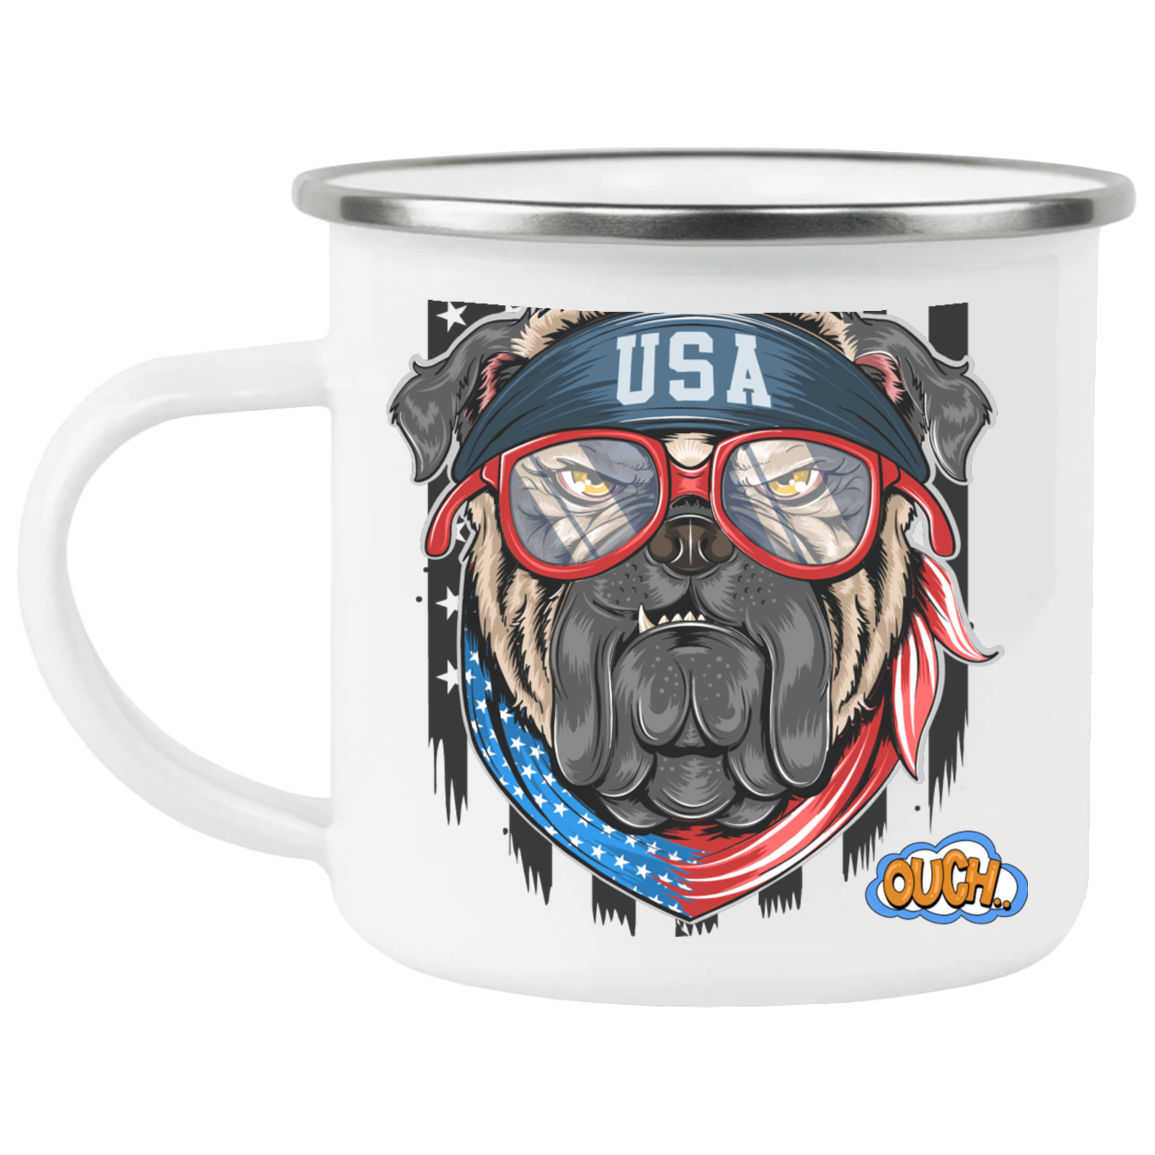 USA DOG-OUCH-12 Fl oz Enamel Coating and Rounded Mug